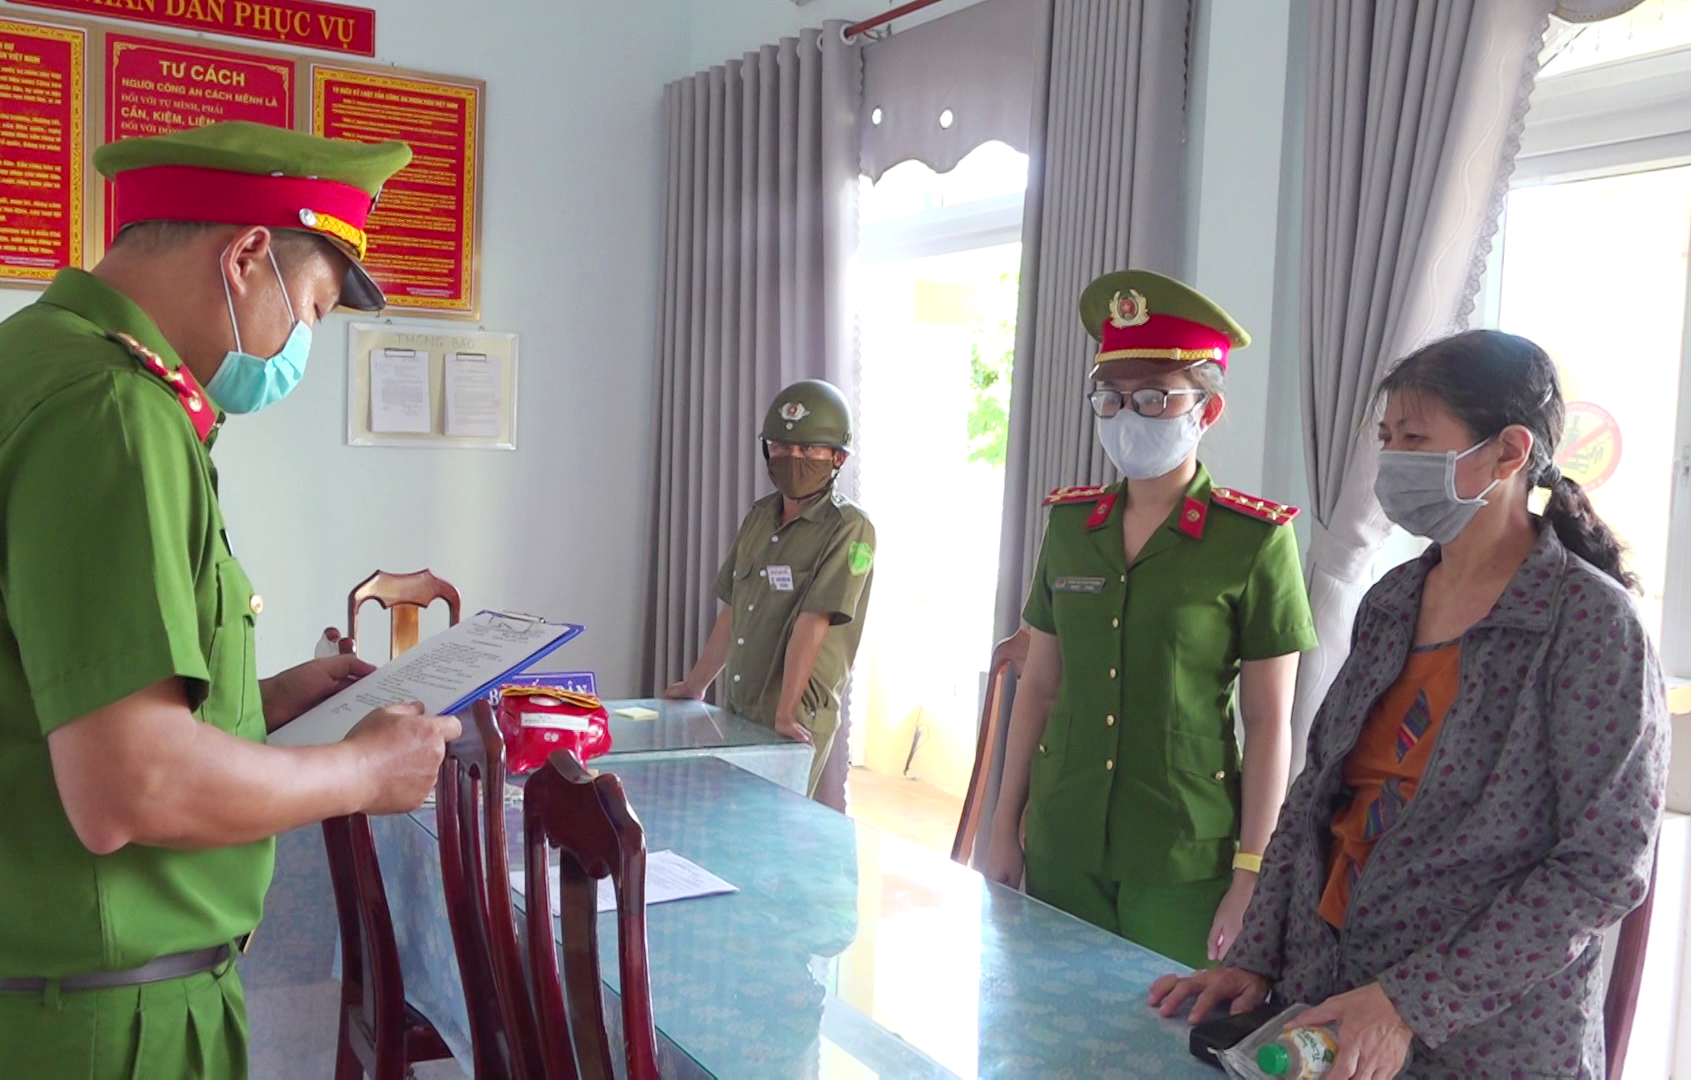 Cơ quan Cảnh sát điều tra thi hành các quyết định đối với bị can Nguyễn Thị Kim Anh